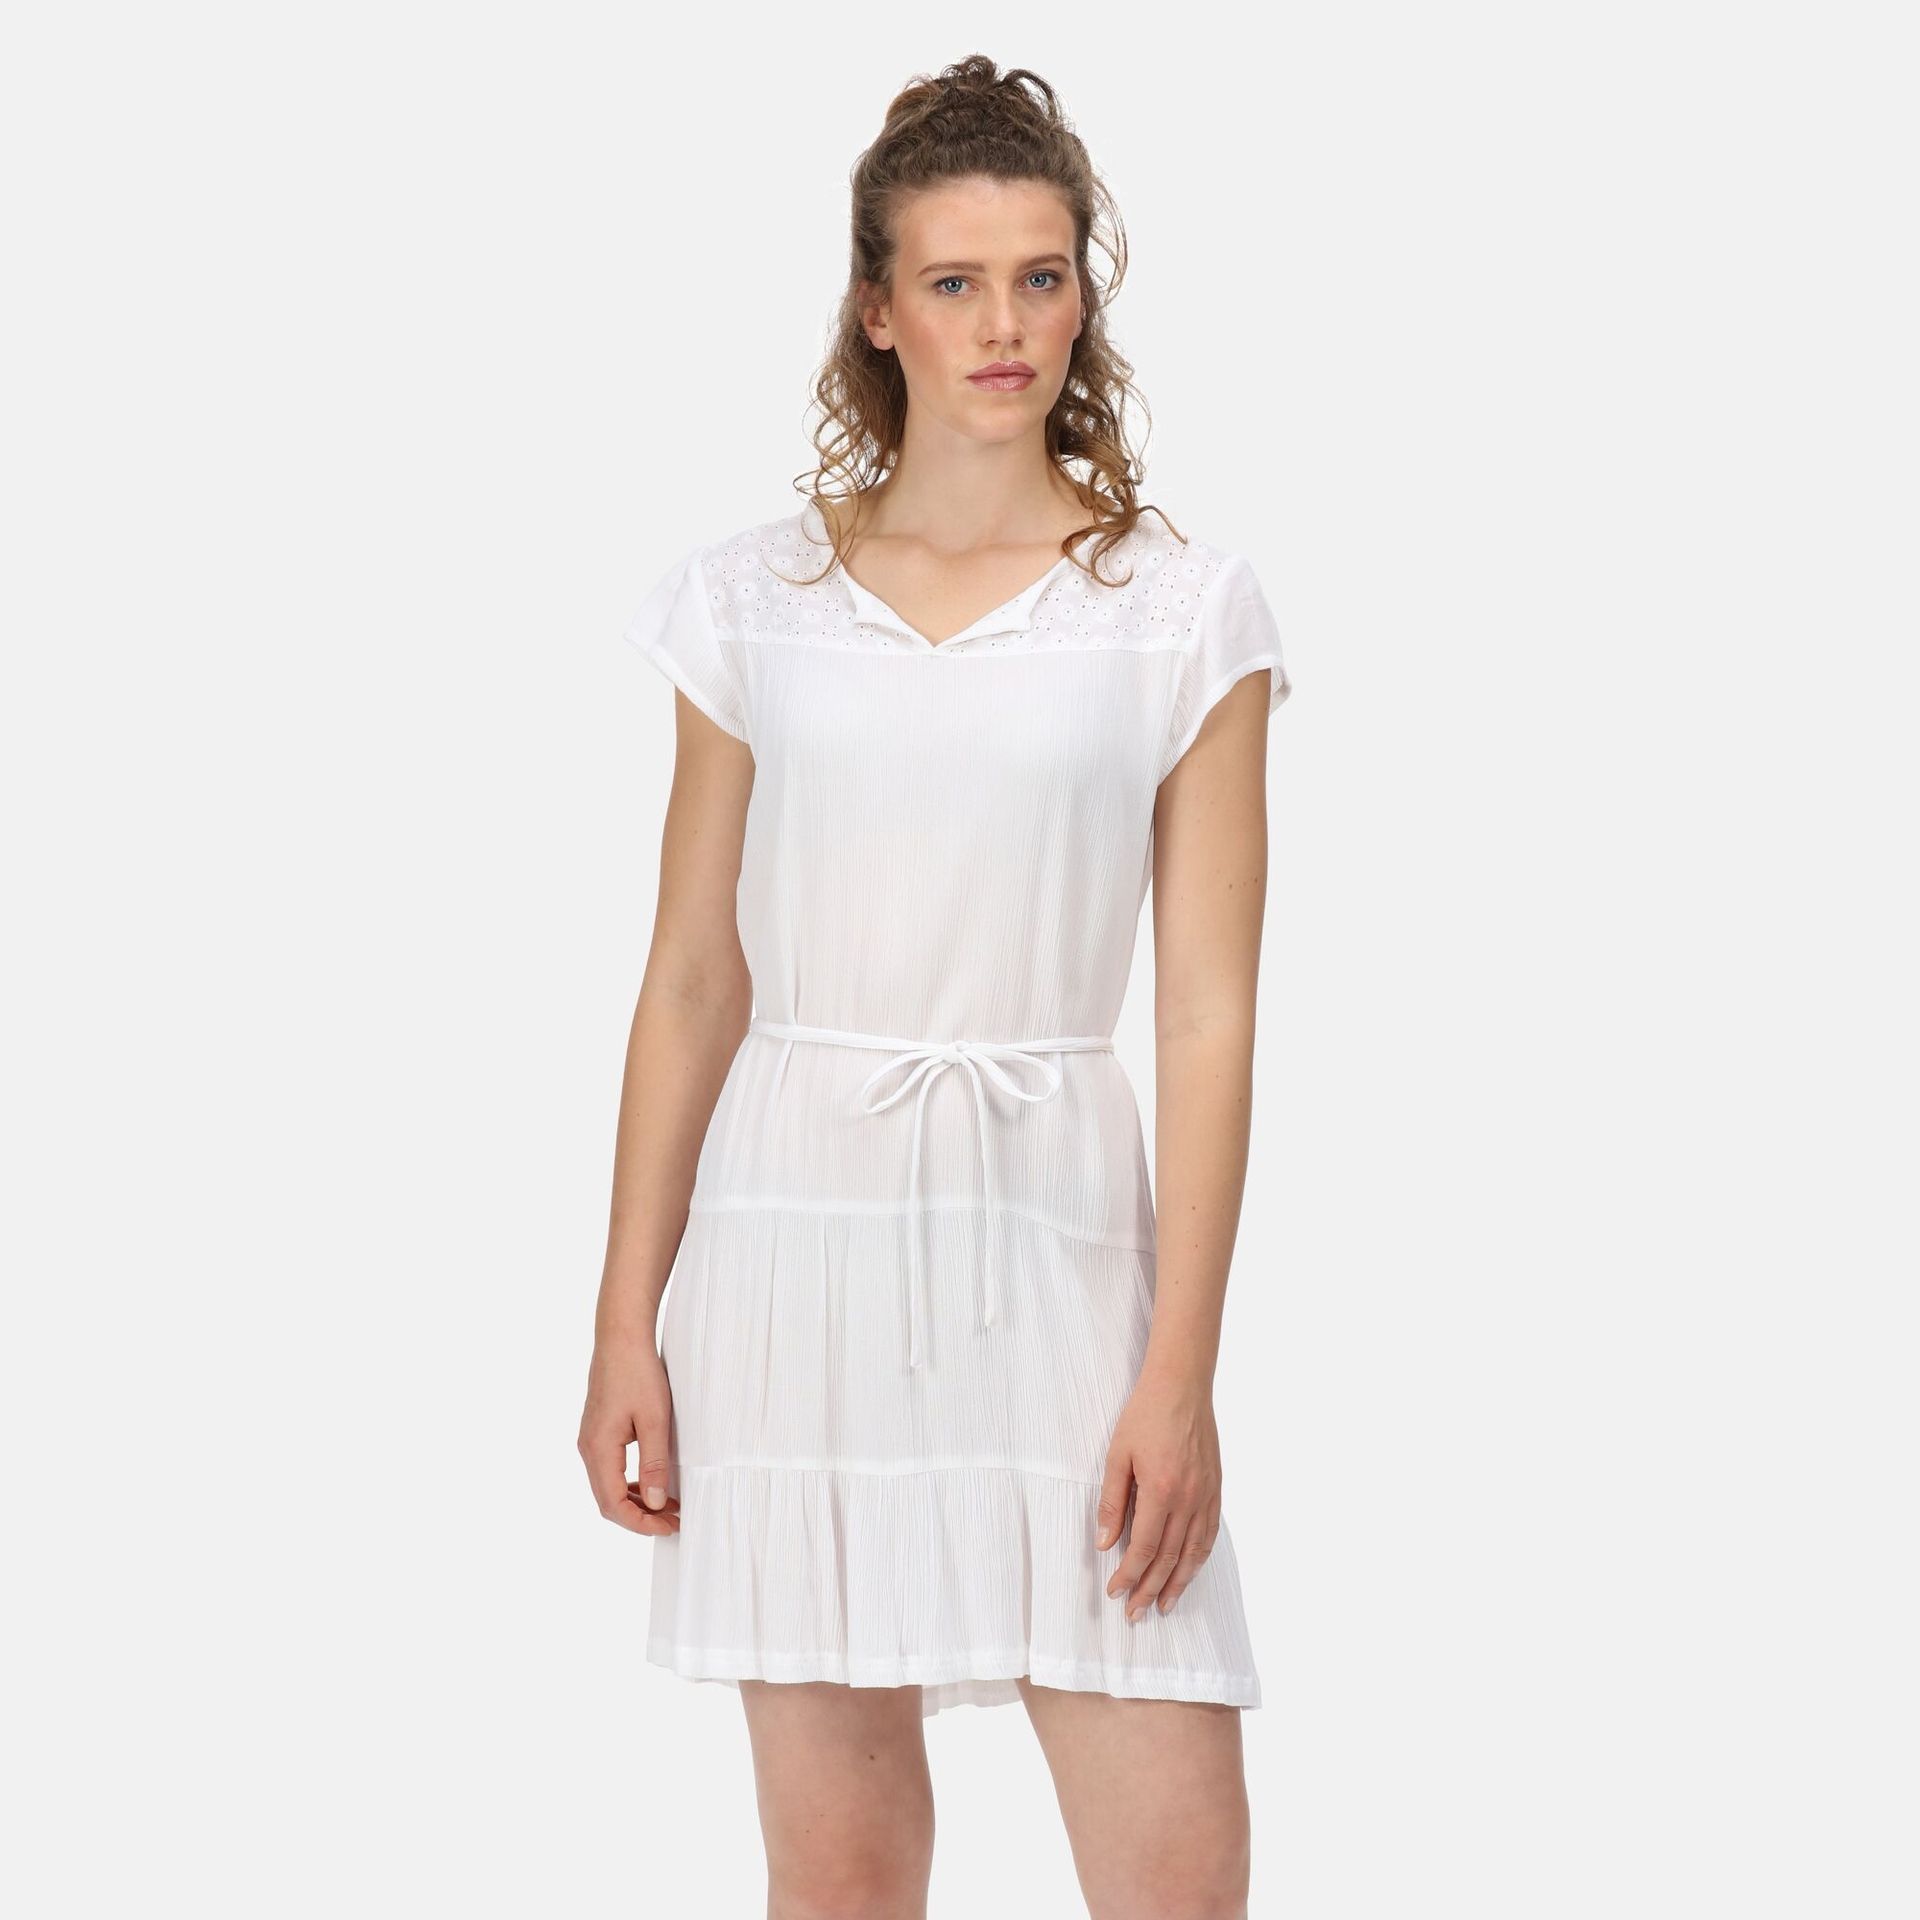 Regatta Damska Sukienka Reanna Biały, Rozmiar: 36